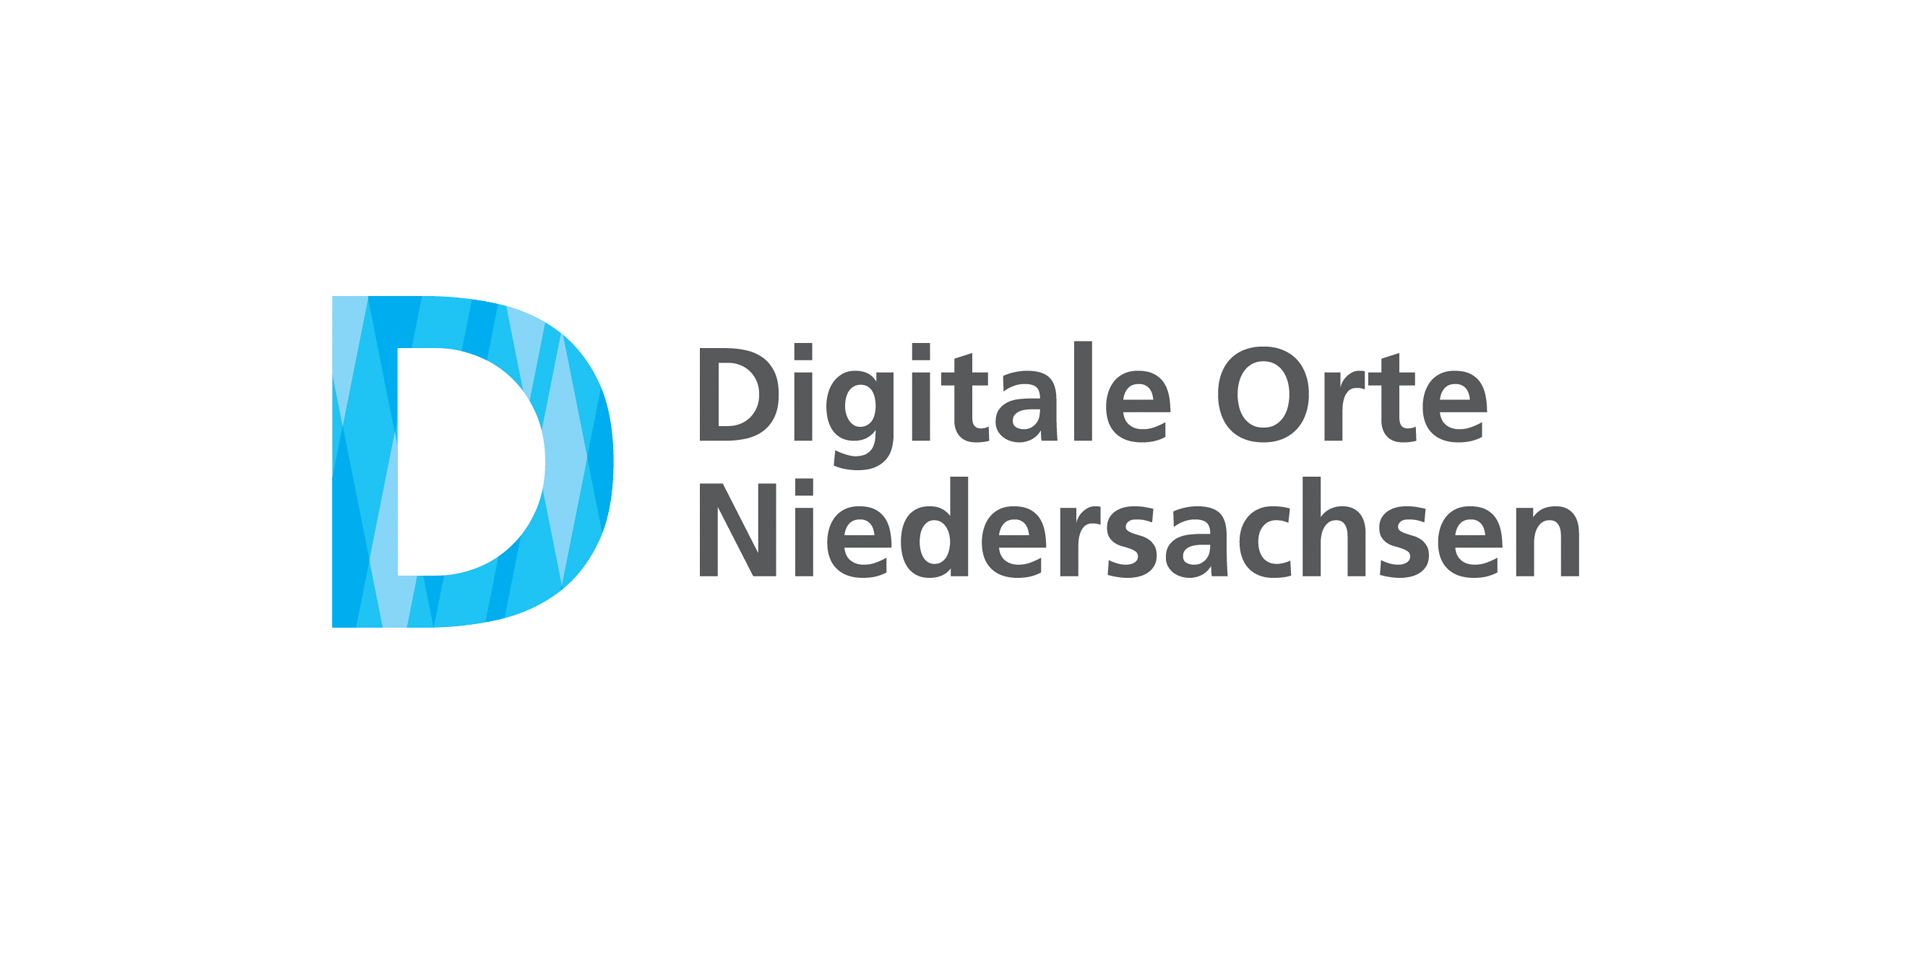 Logo der Auszeichnung Digitale Orte Niedersachsen